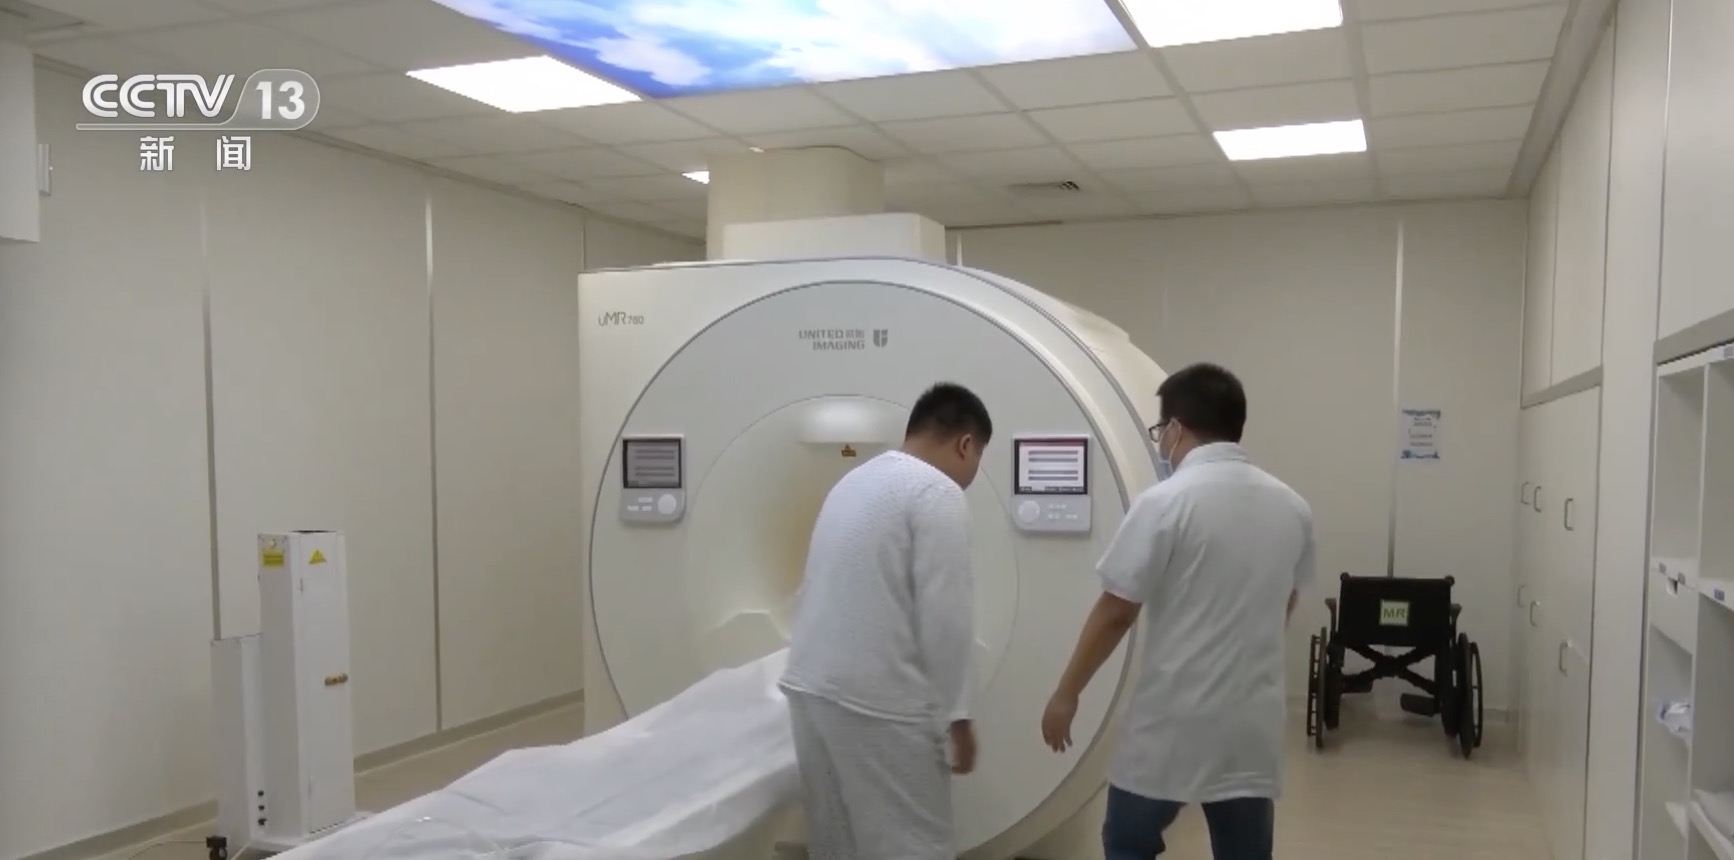 在中国南方广东省深圳市的北京大学深圳医院，一名患者正在准备接受中国自主研发的核磁共振设备的扫描。  /CMG